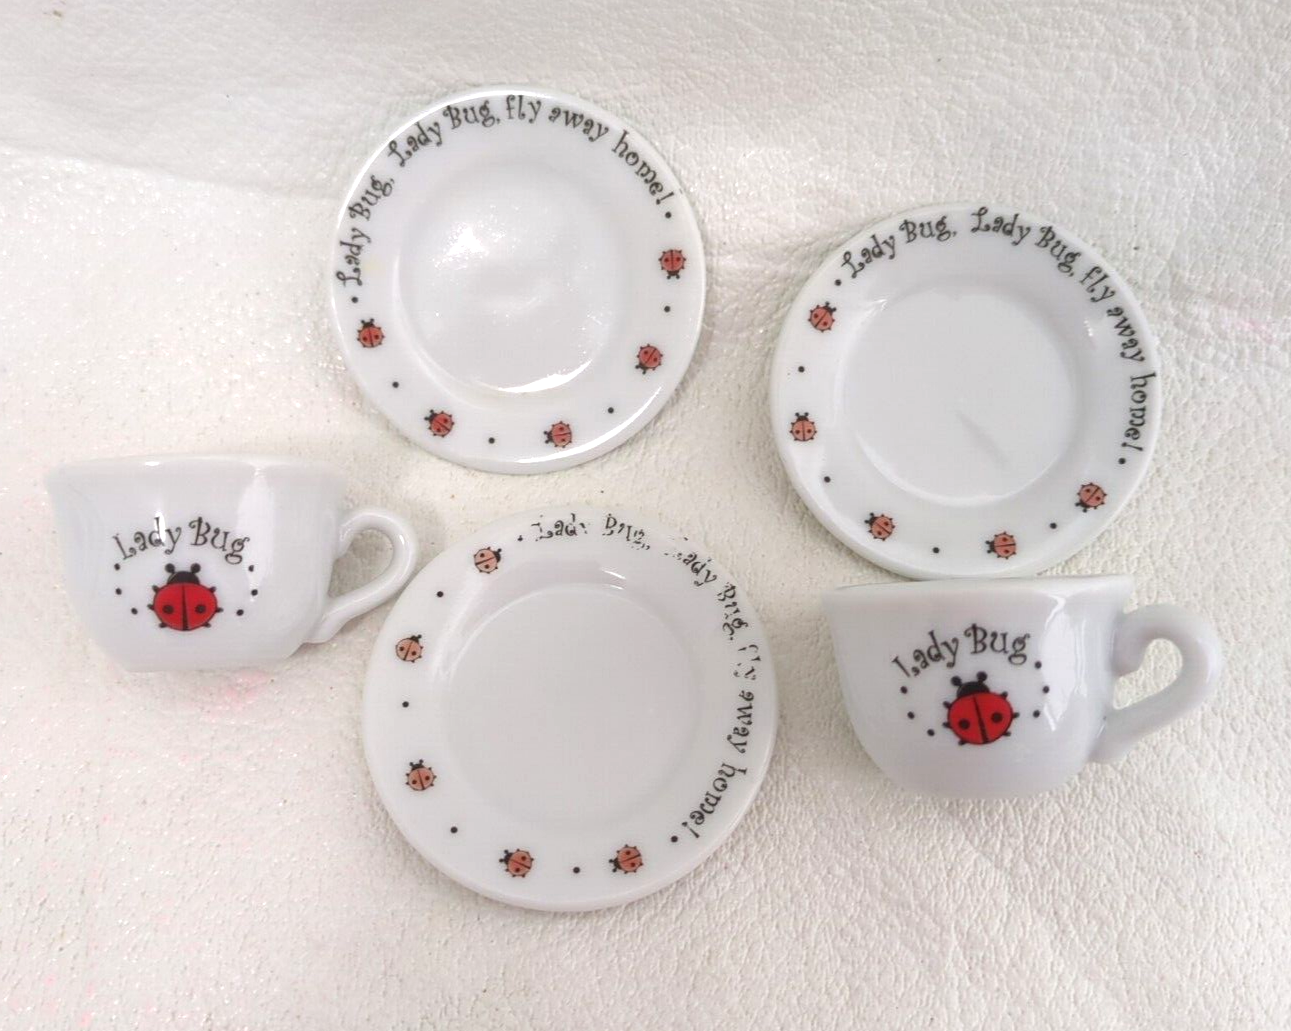 Schylling Ladybug Tea Set Replacement 3 Saucers 2 Teacups - $4.95